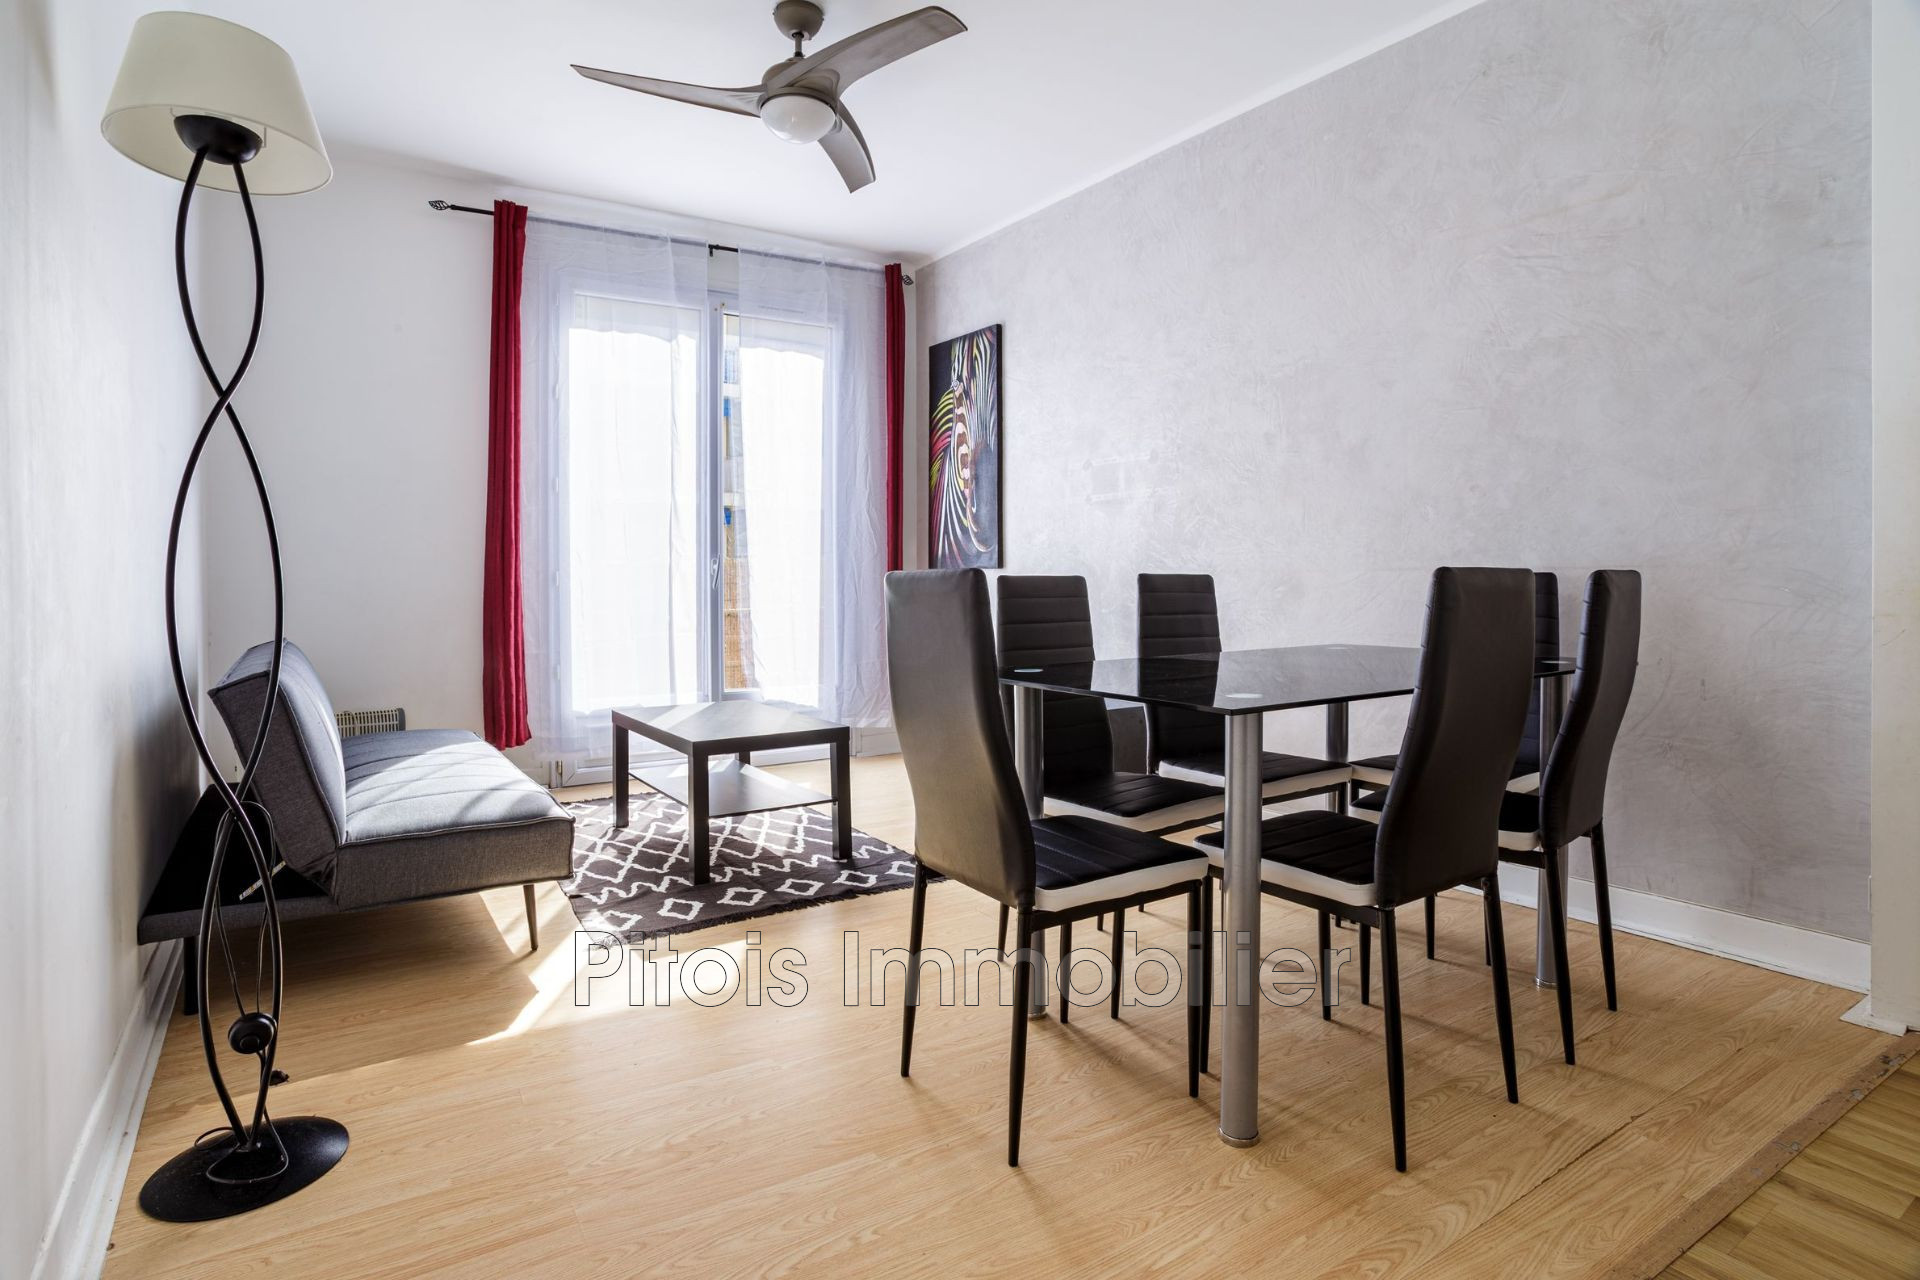 Vente Appartement 51m² 2 Pièces à Juan les Pins (06160) - Pitois Immobilier Orpi